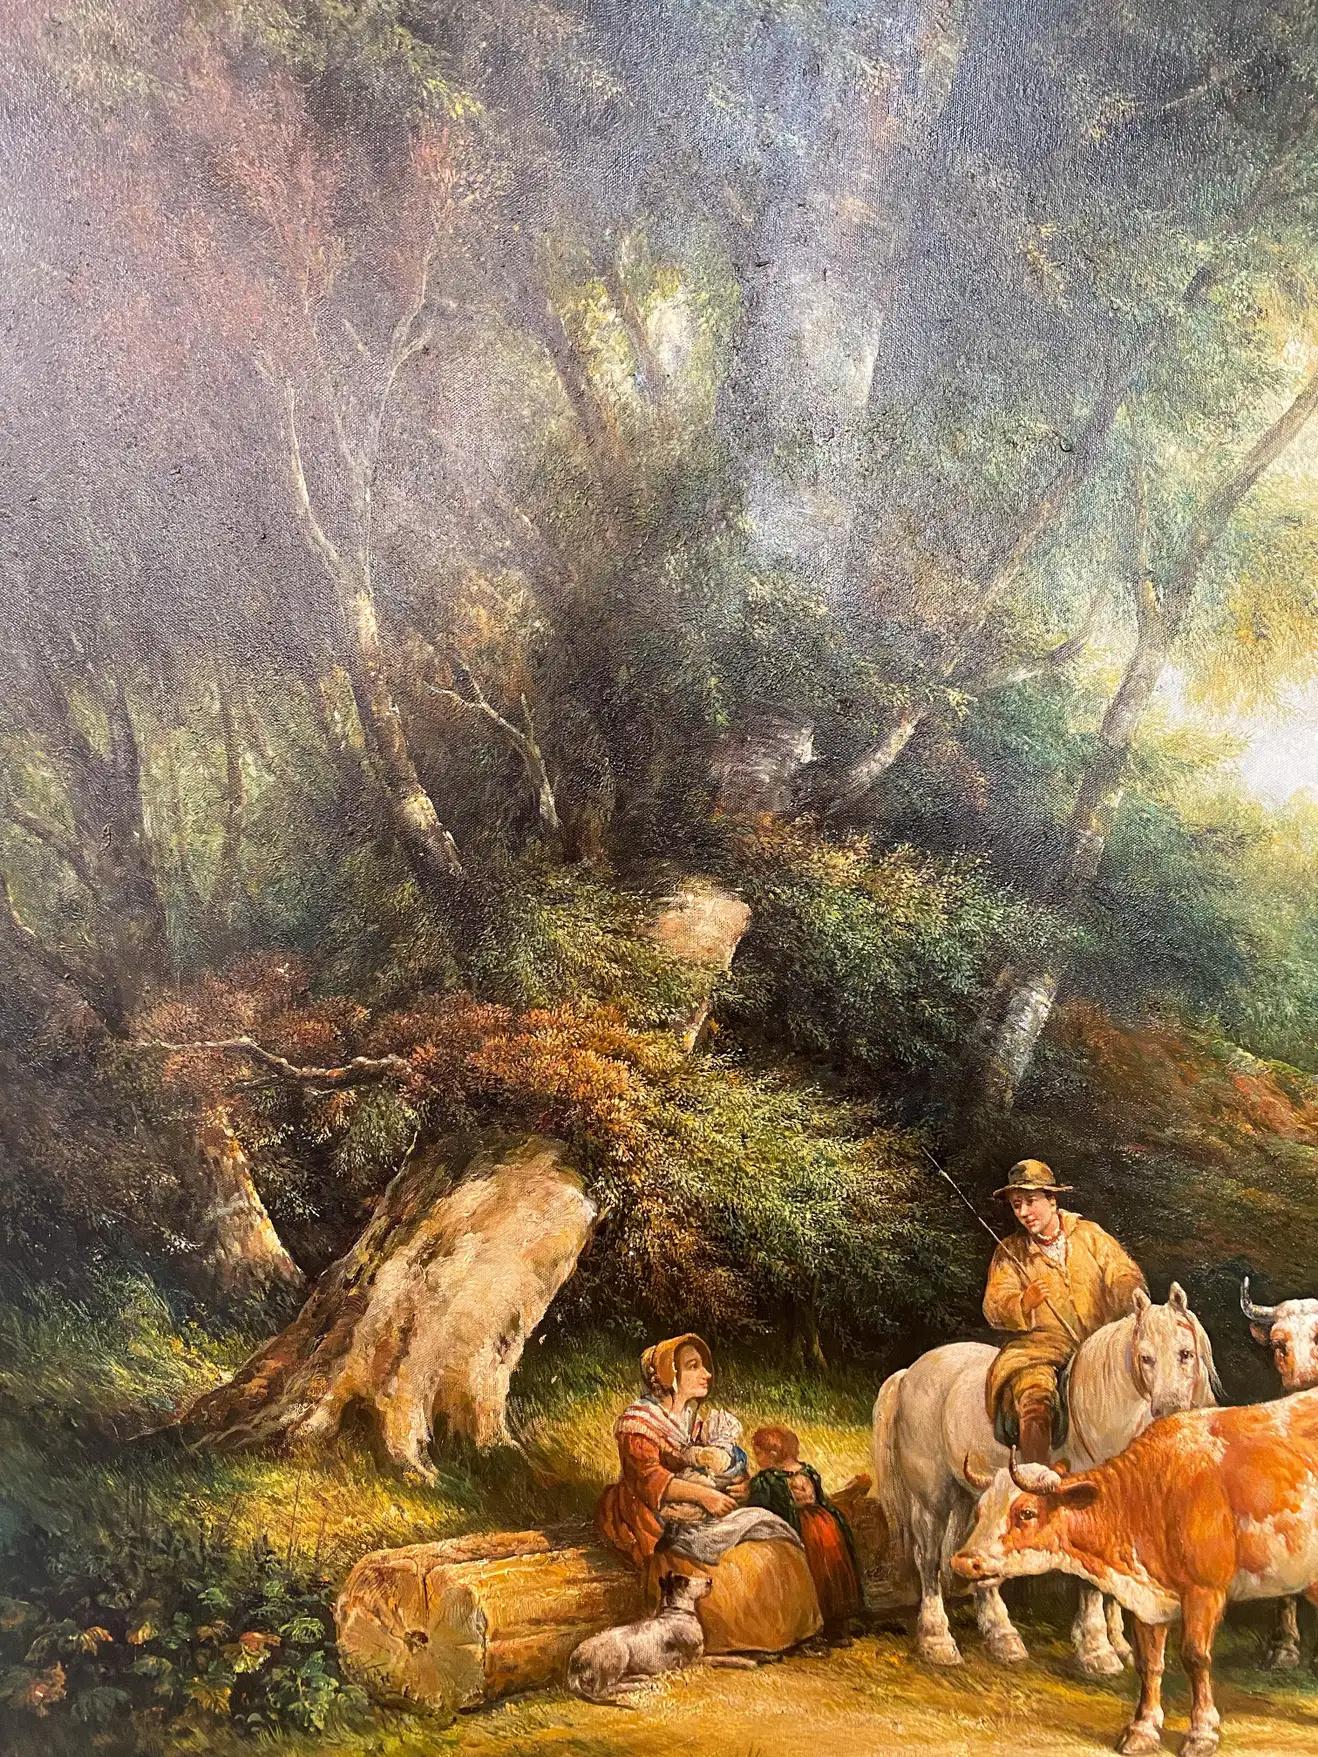 Ein exquisites großes impressionistisches Gemälde von Bauern mit Vieh in der Art von Julius Paul Junghanns (Deutscher, 1876-1958). Das Gemälde zeigt eine Bauernfamilie mit ihrem Hund und ihrem Vieh, die sich mitten im Wald ausruhen, umgeben von